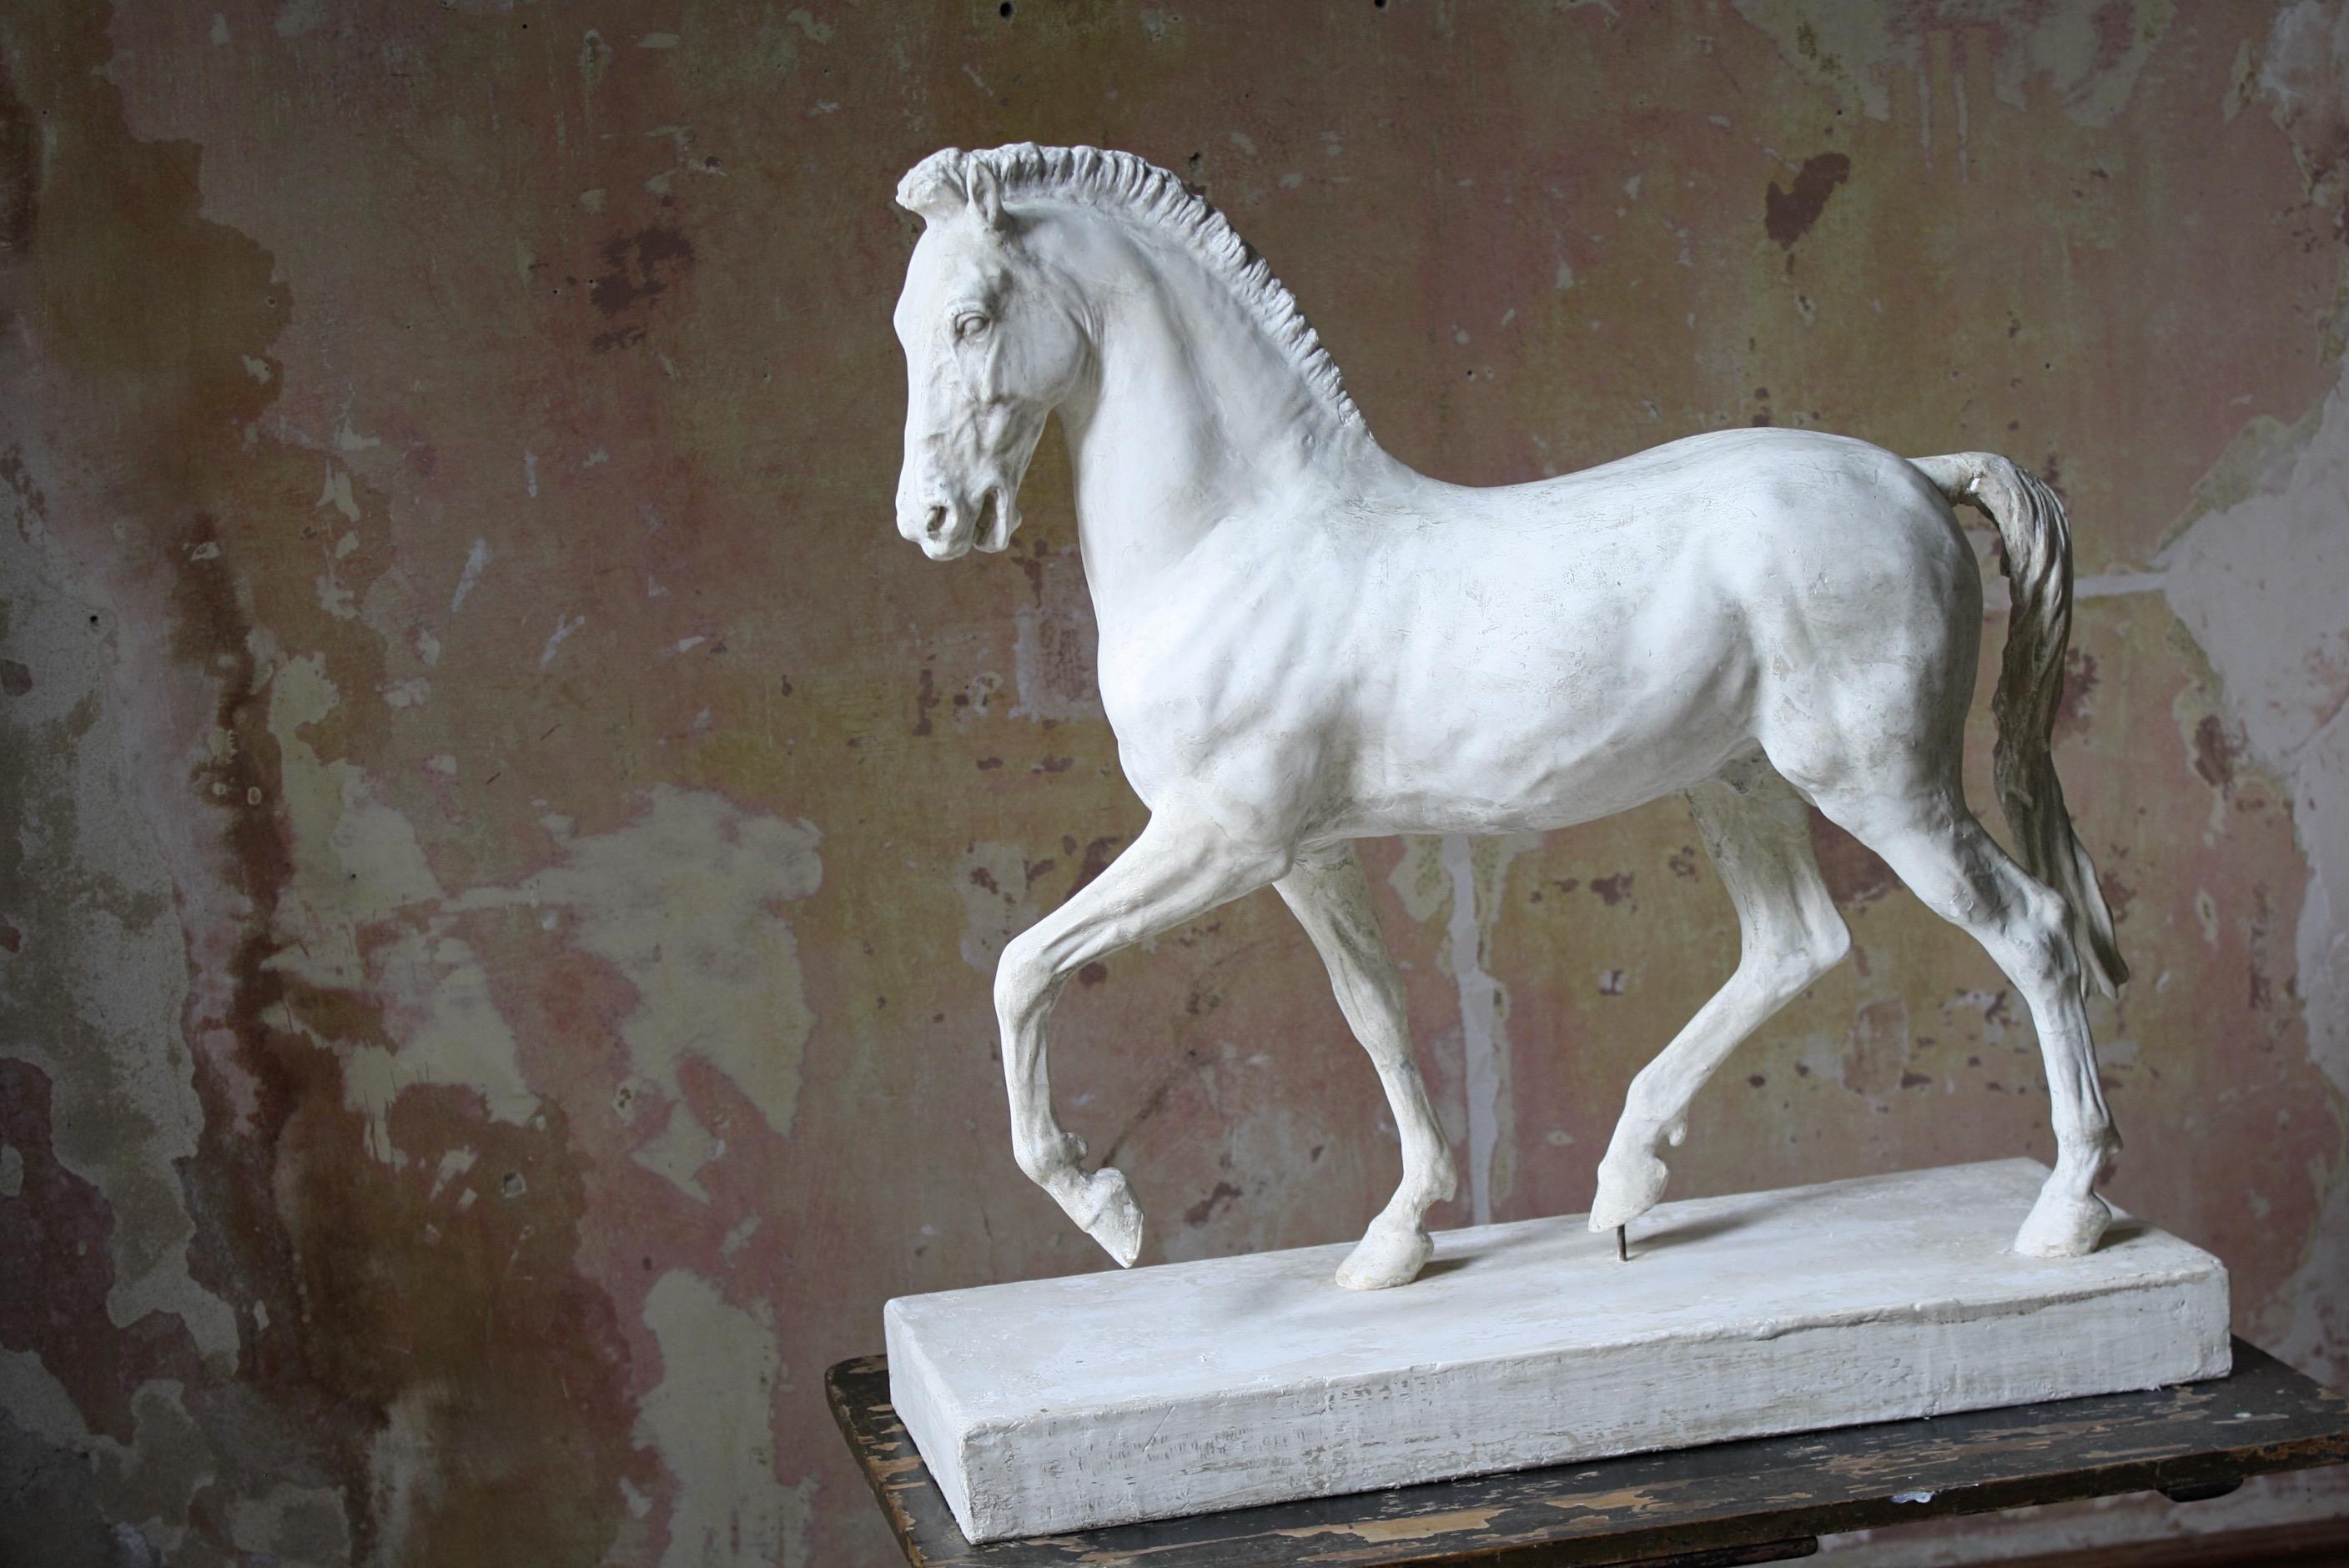 19th Century 19th C Italian Basilica, Venice St Marks Plaster Equestrian Horse Statuette